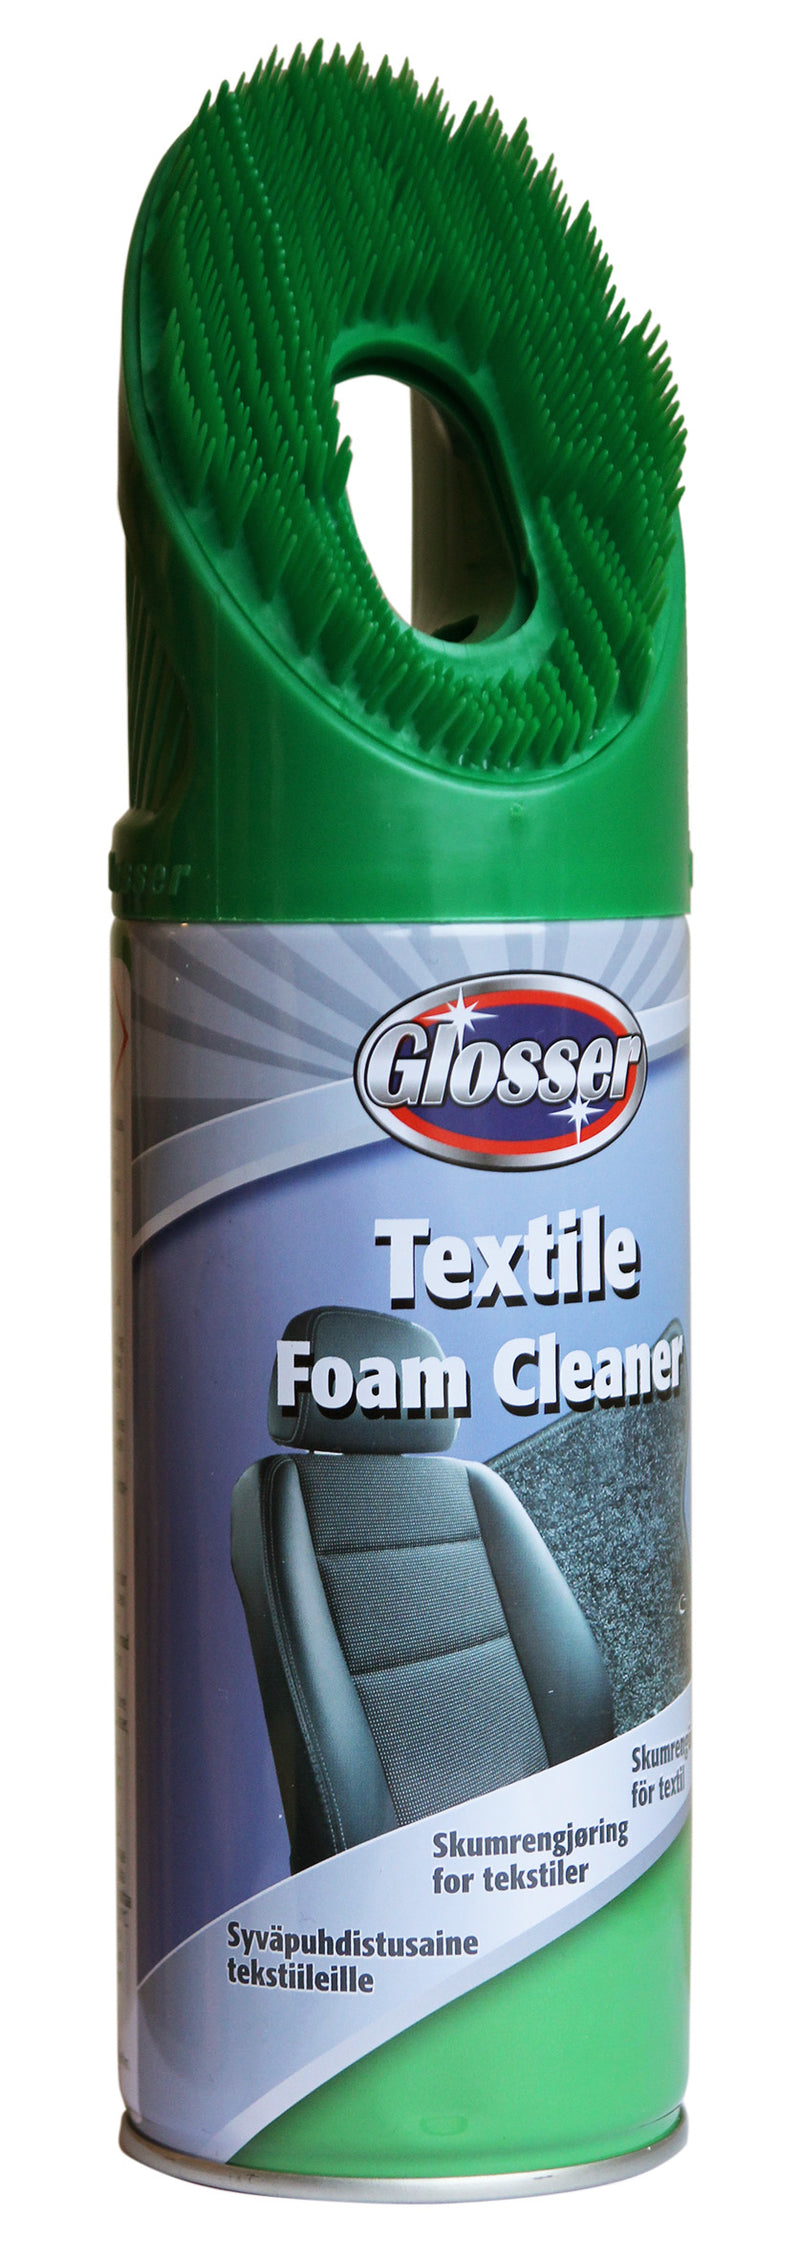 Glosser Foamcleaner Textile 450ml